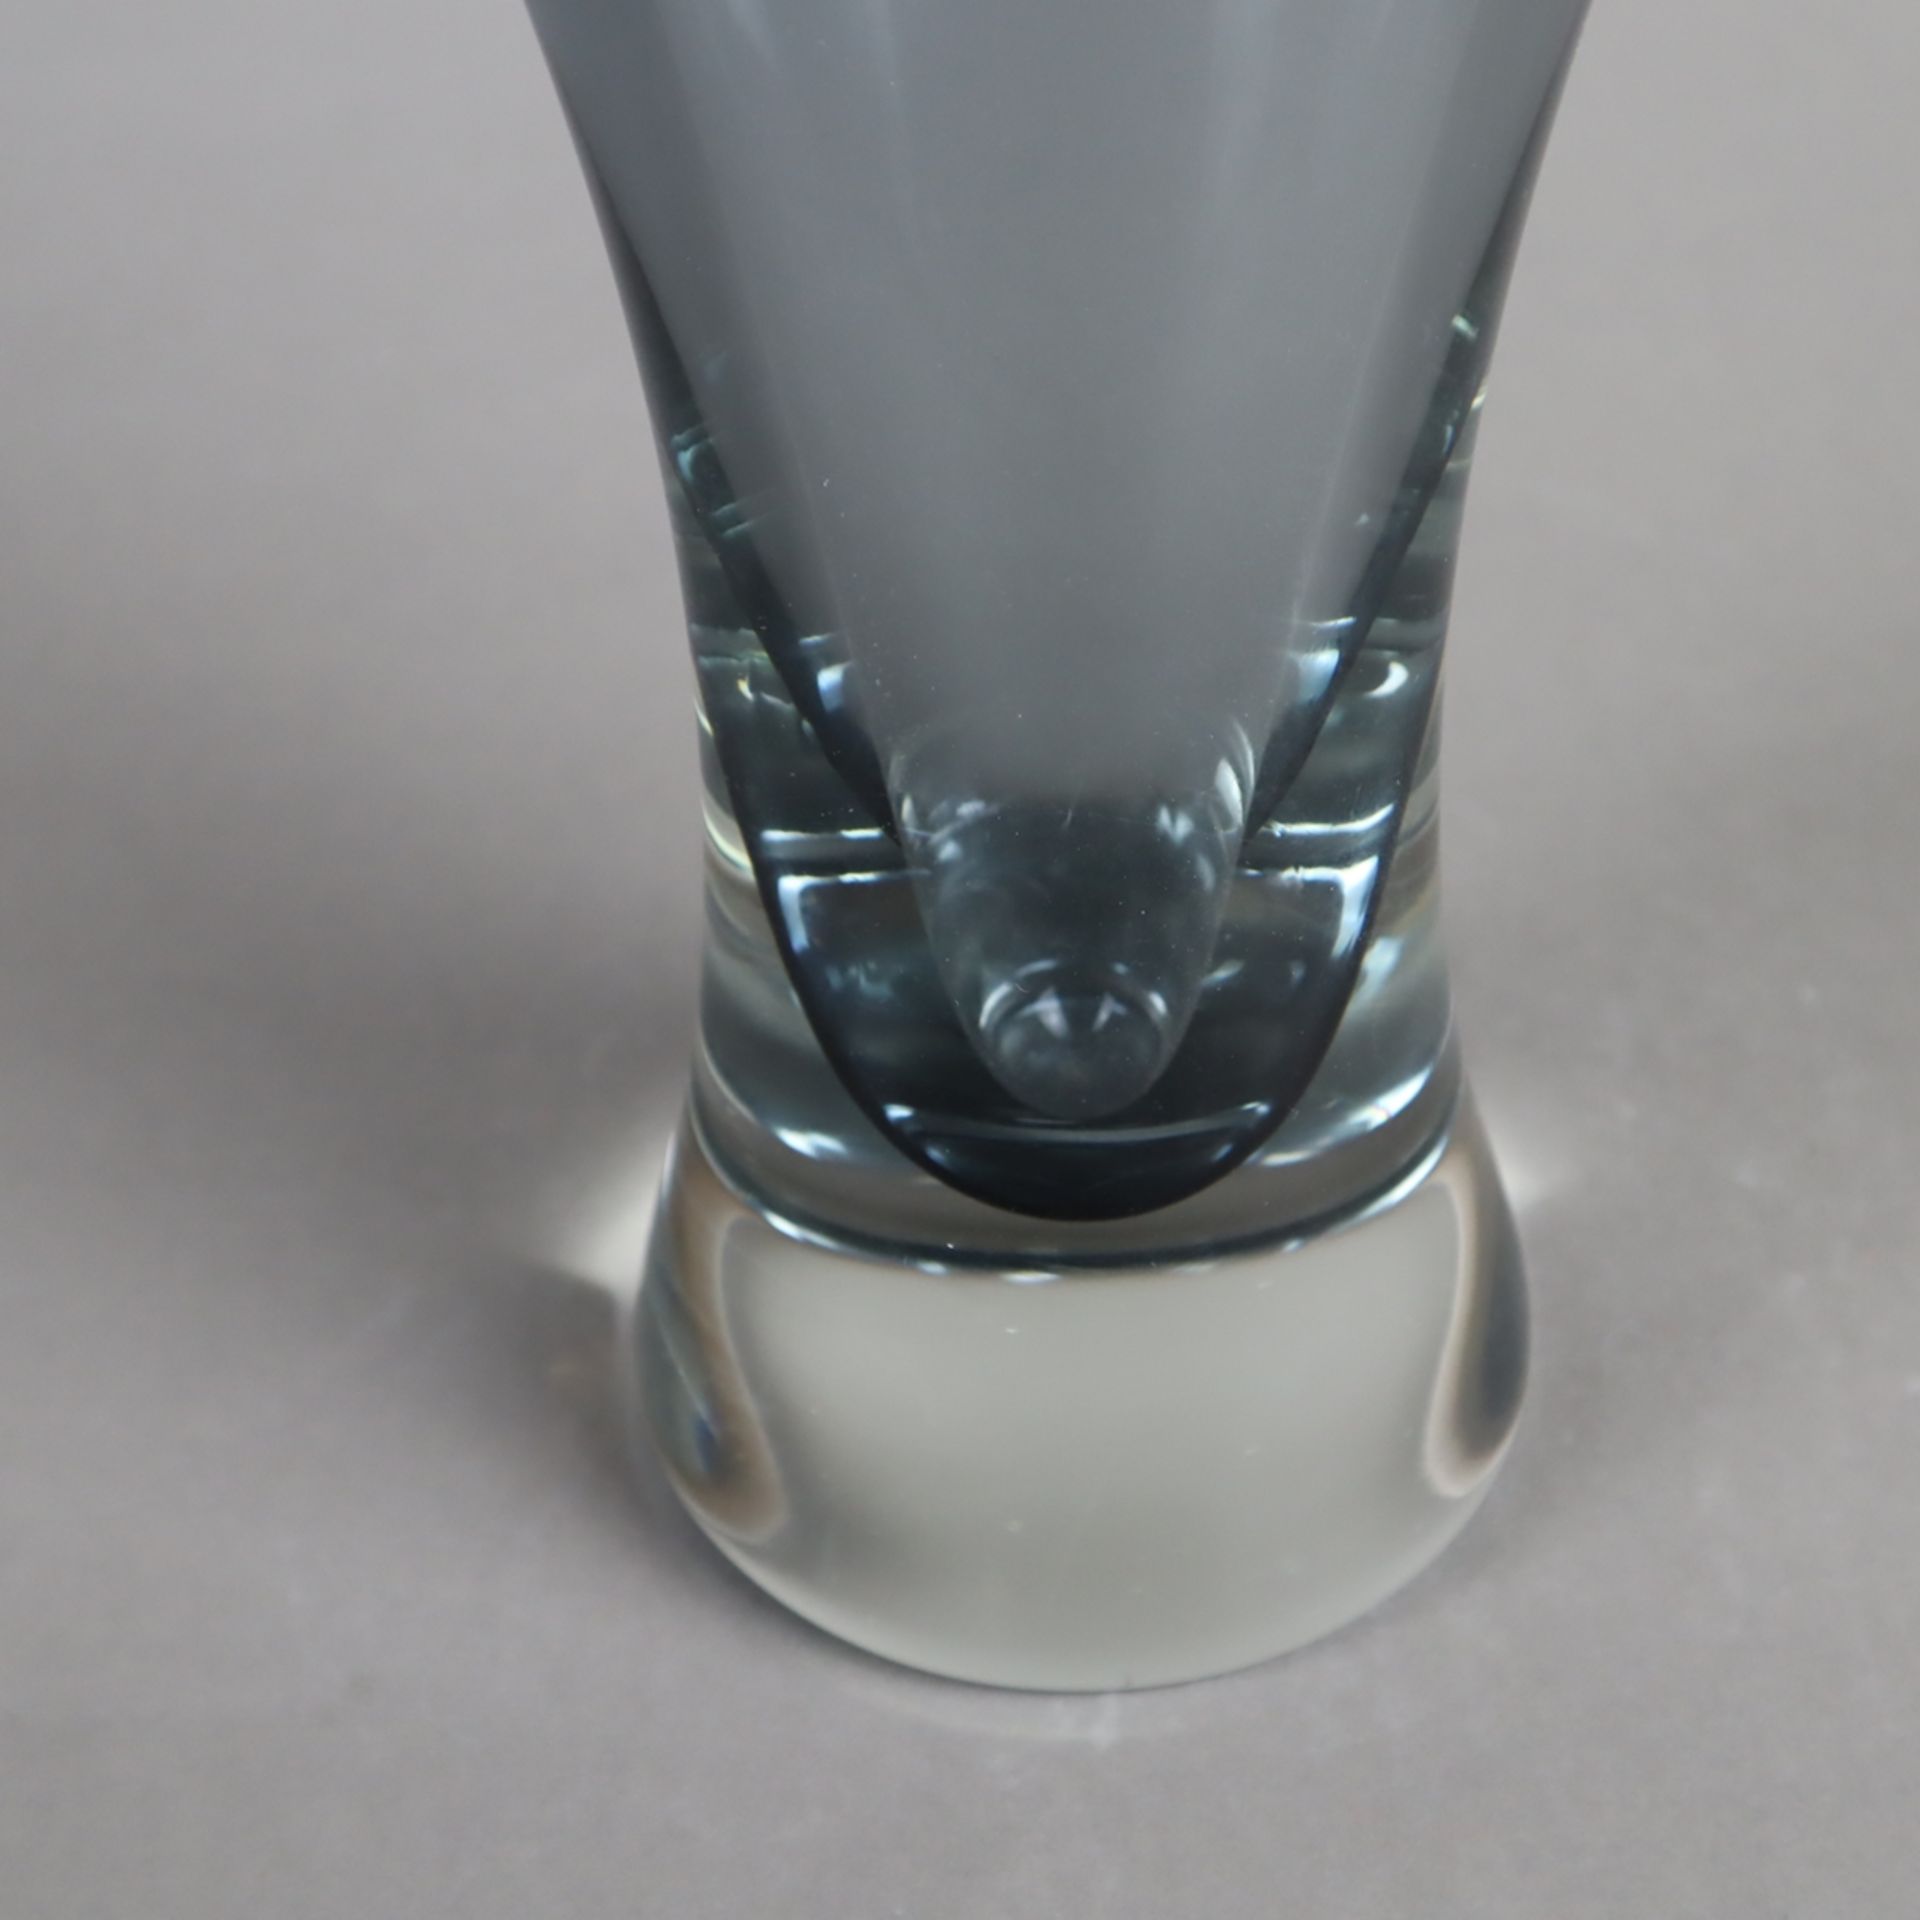 Glasvase - Formia, Murano, farbloses Glas, rauchblau unterfangen, Keulenform, schmale Mündung seitl - Bild 4 aus 6